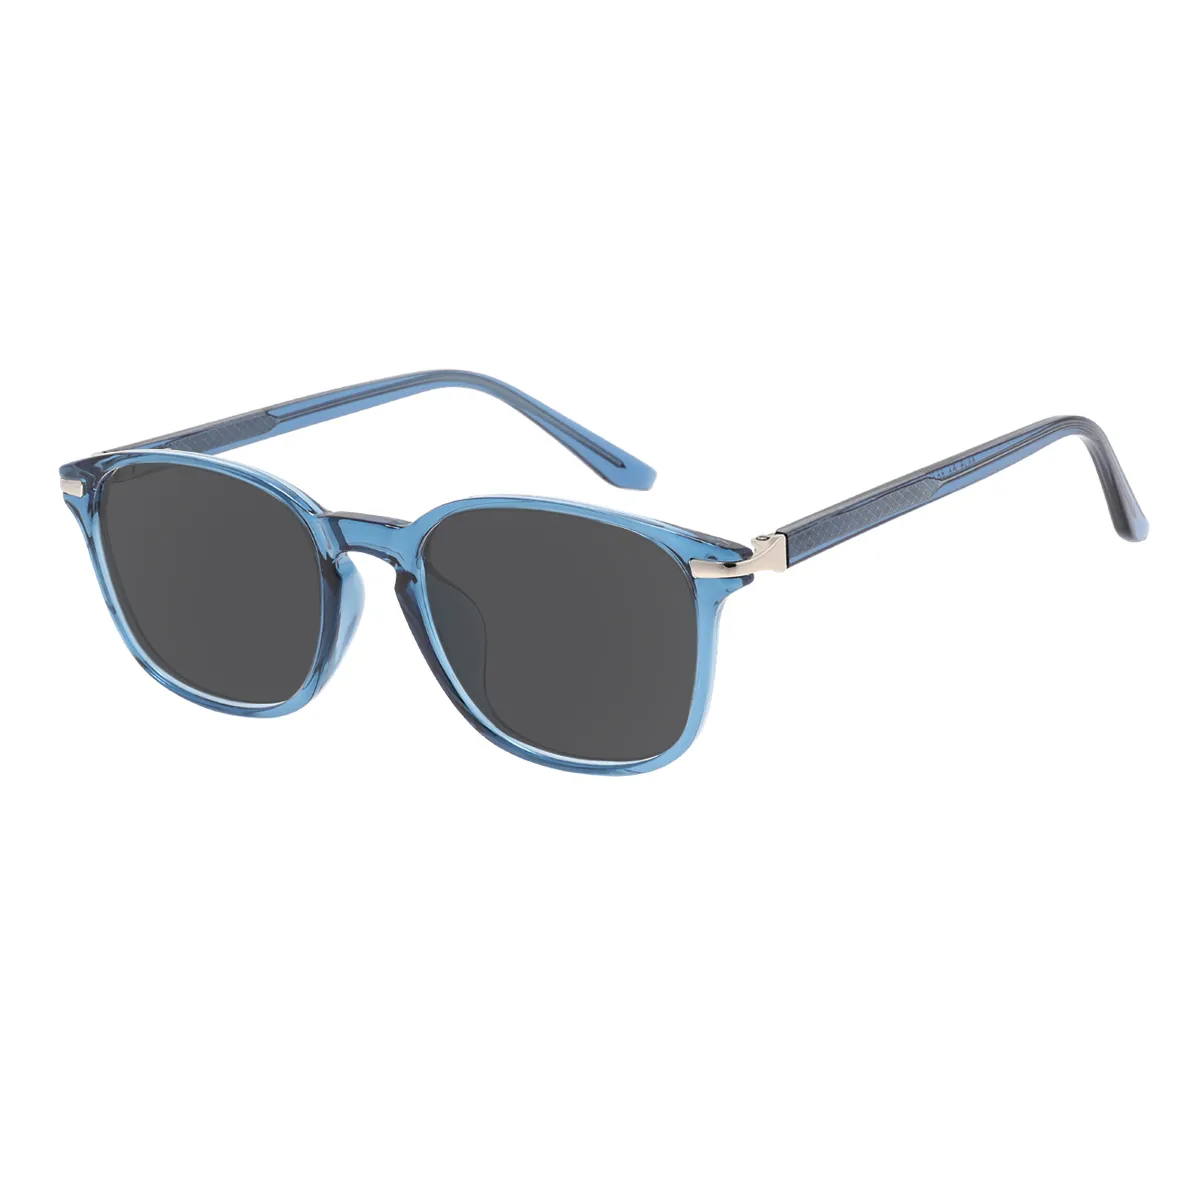 Emerson - Square Blue Sunglasses for Men & Women